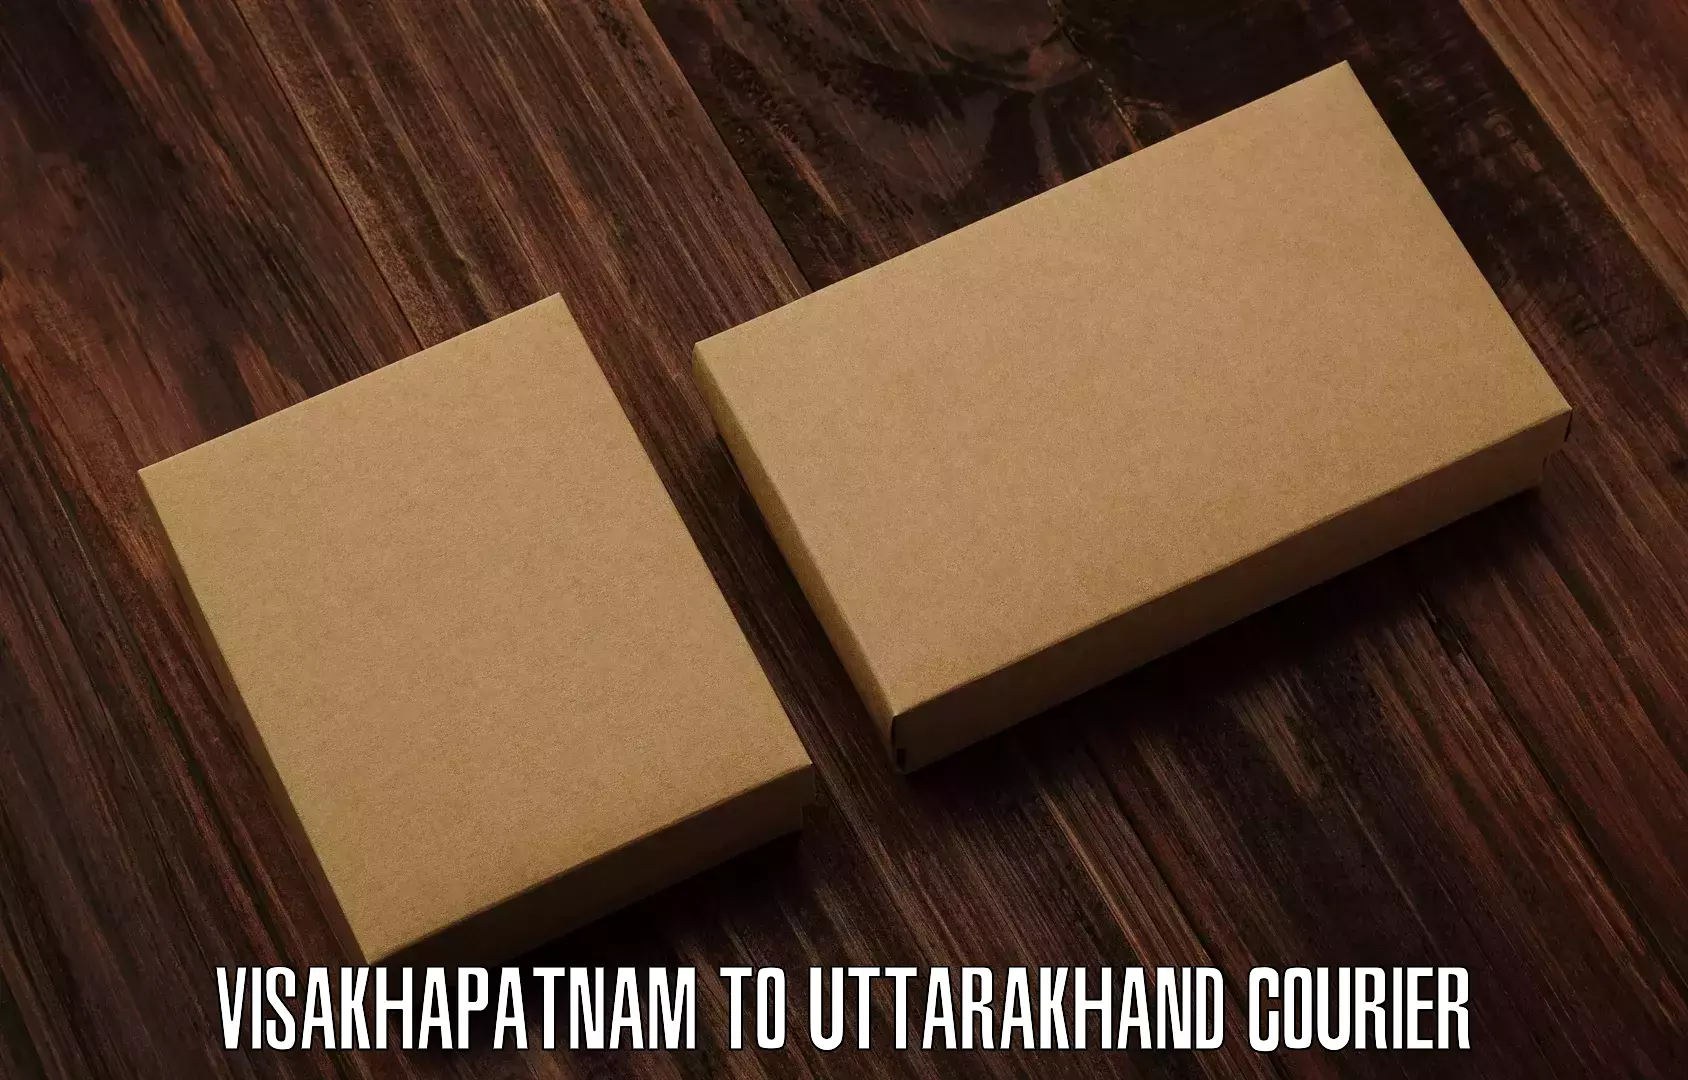 Business shipping needs Visakhapatnam to Uttarakhand